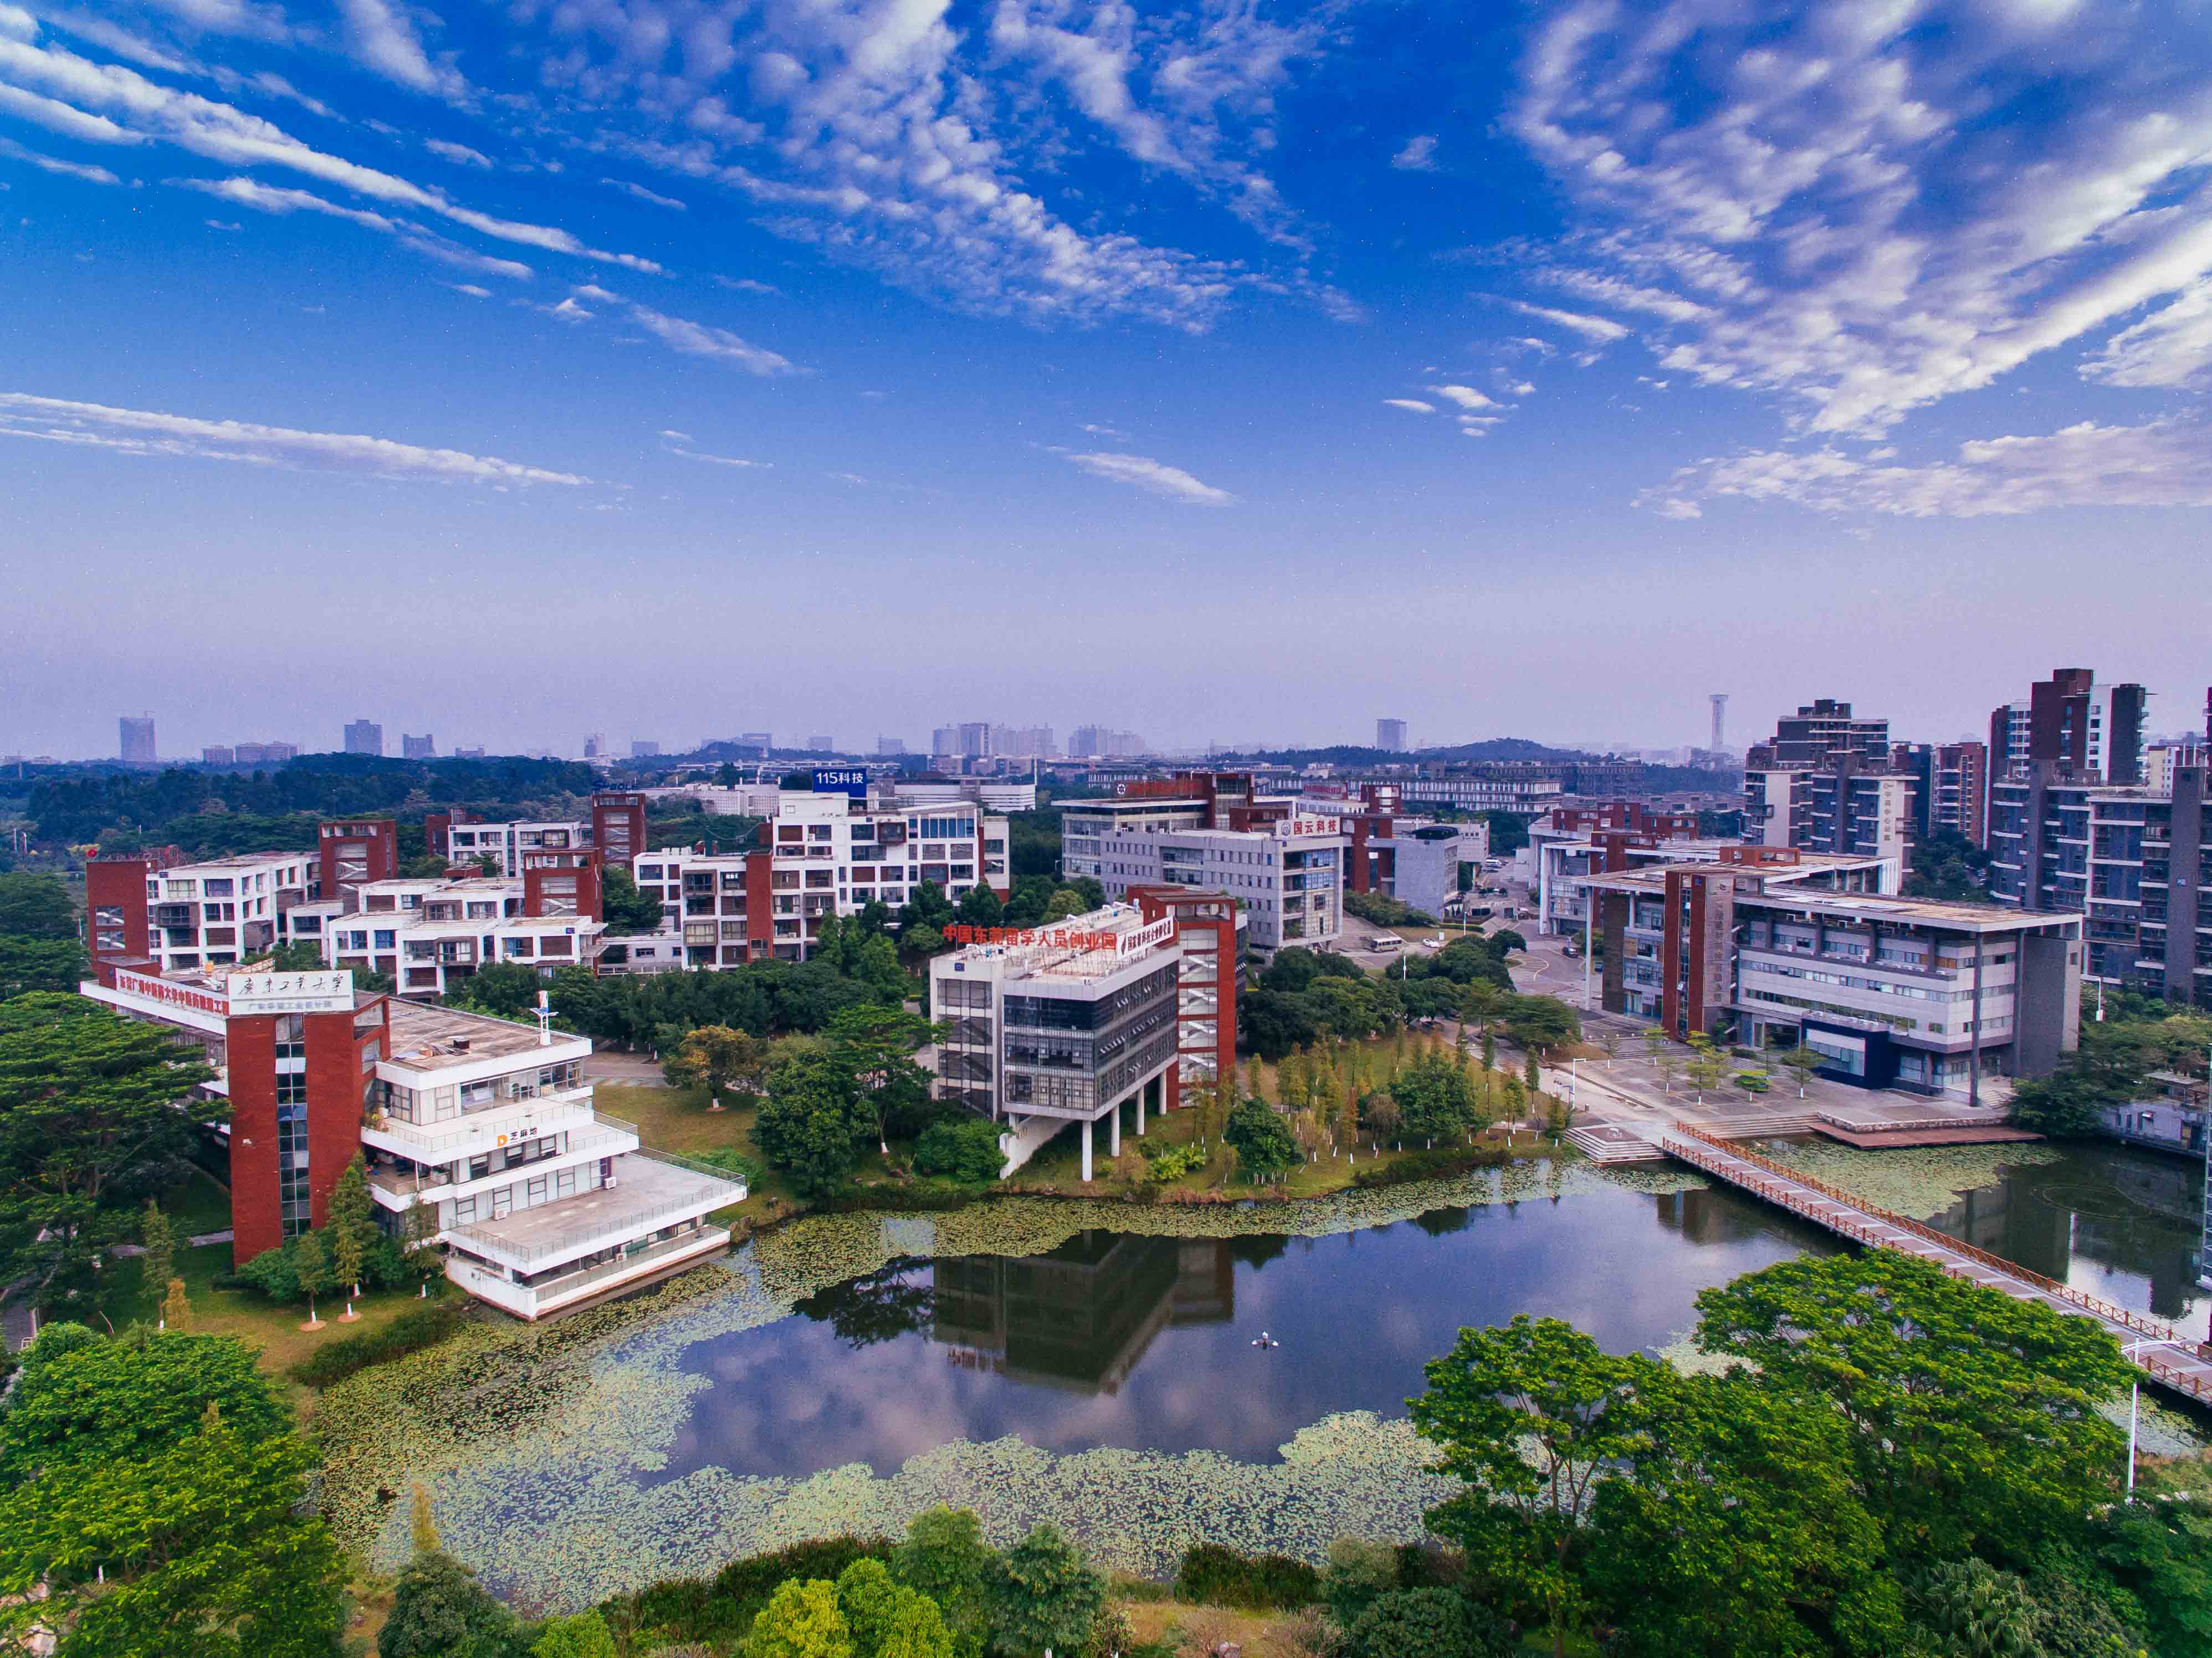 松山湖材料实验室规划建设松山湖科学城,与深圳光明科学城一并被基本